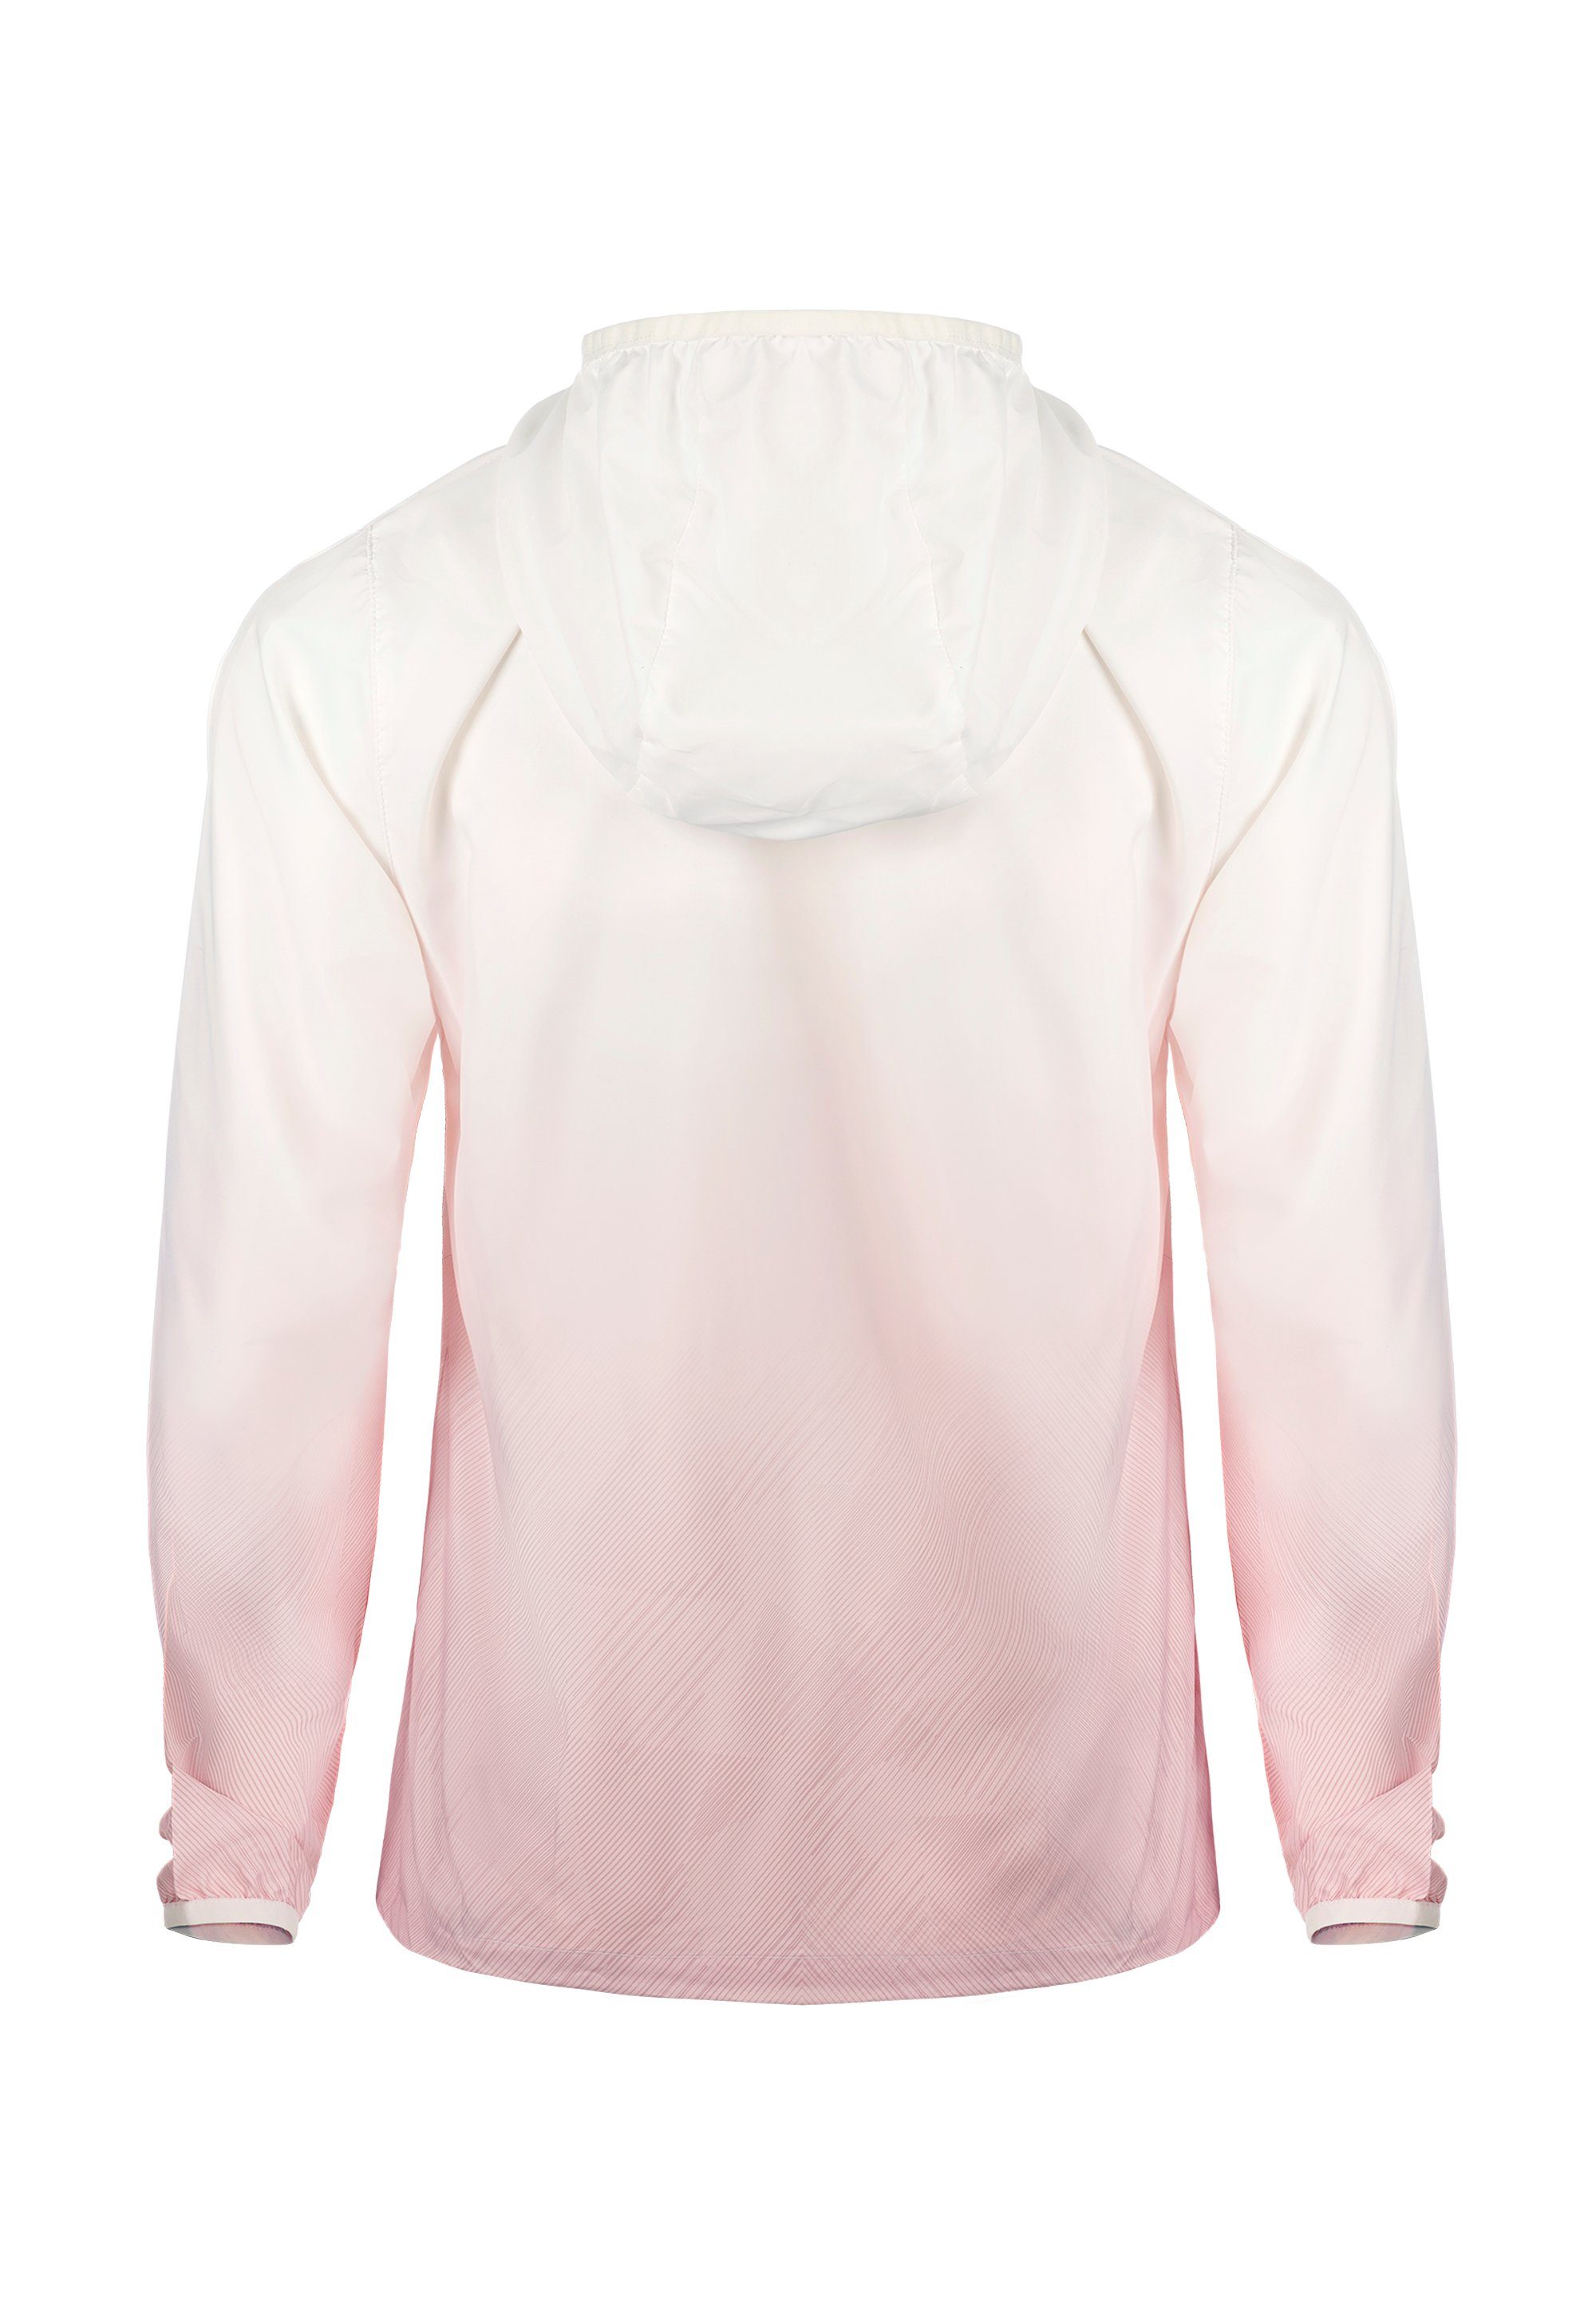 GIORDANO UV-Schutzfaktor Motion Outdoorjacke 50+ pink-weiß G mi